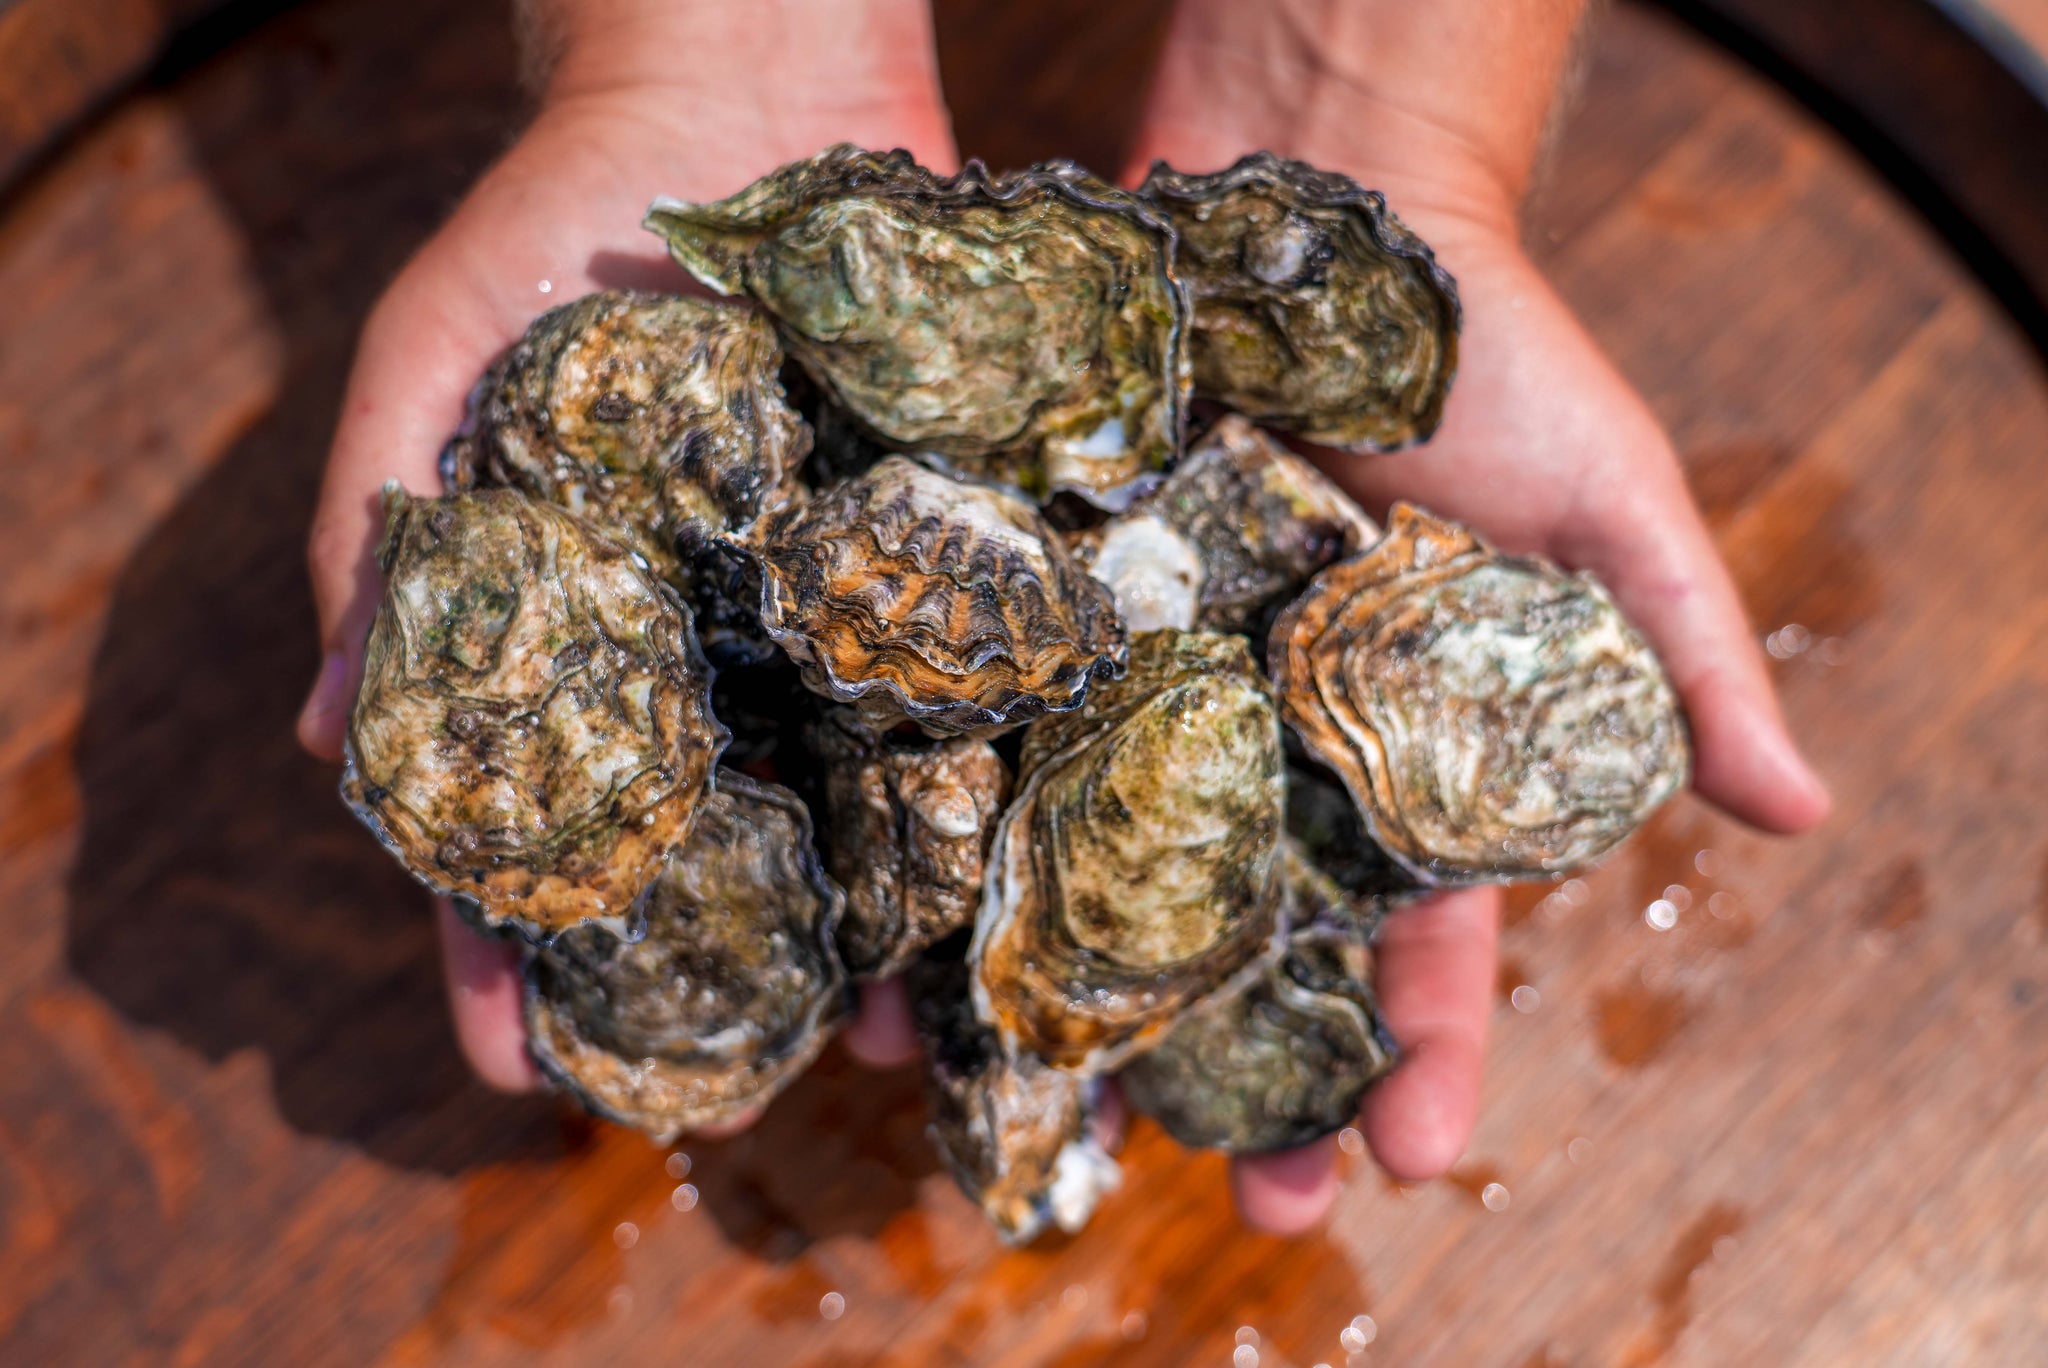 Carlsbad Aquafarm Oysters in hand